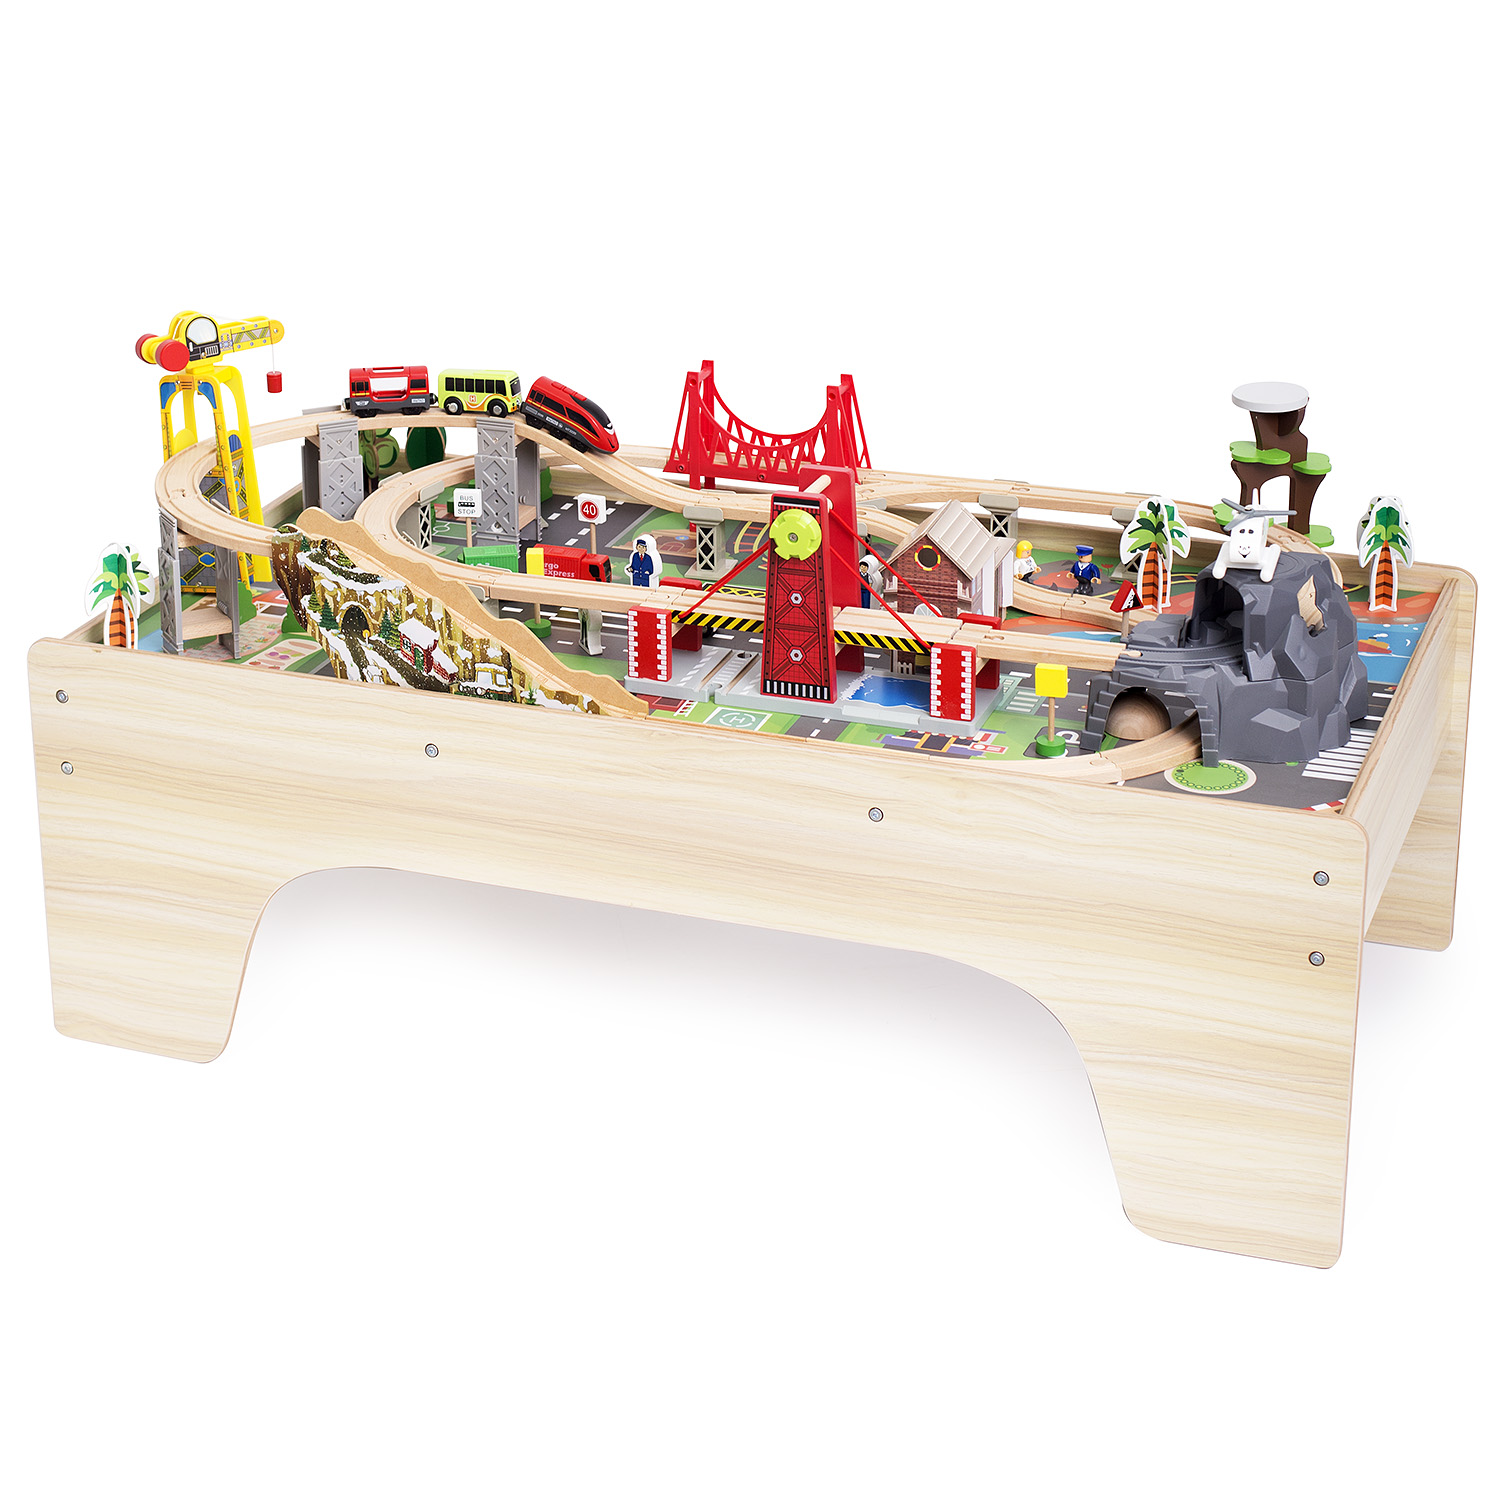 Игровой набор База Игрушек деревянная железная дорога со столом 100 дет